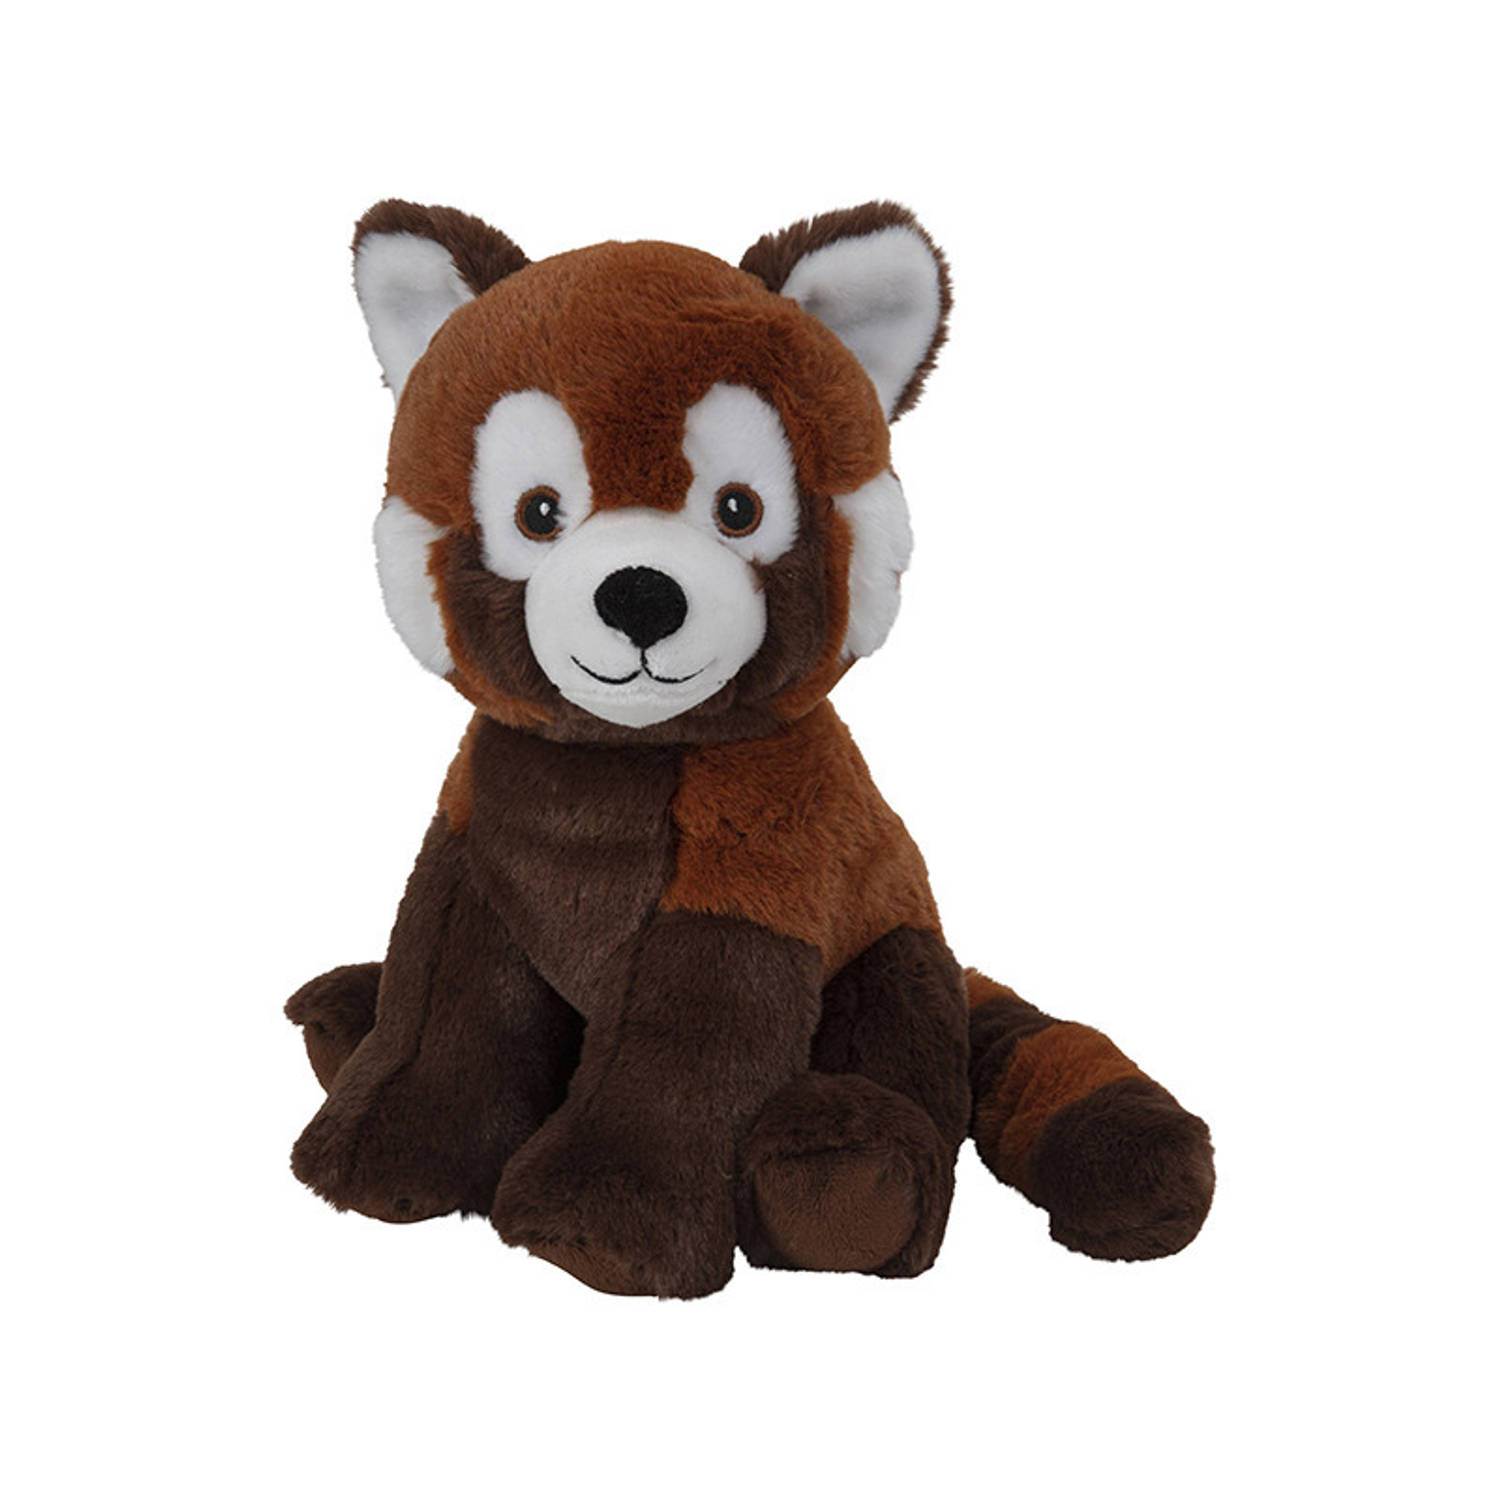 Pluche dieren knuffels Rode panda van 25 cm - Knuffeldieren speelgoed